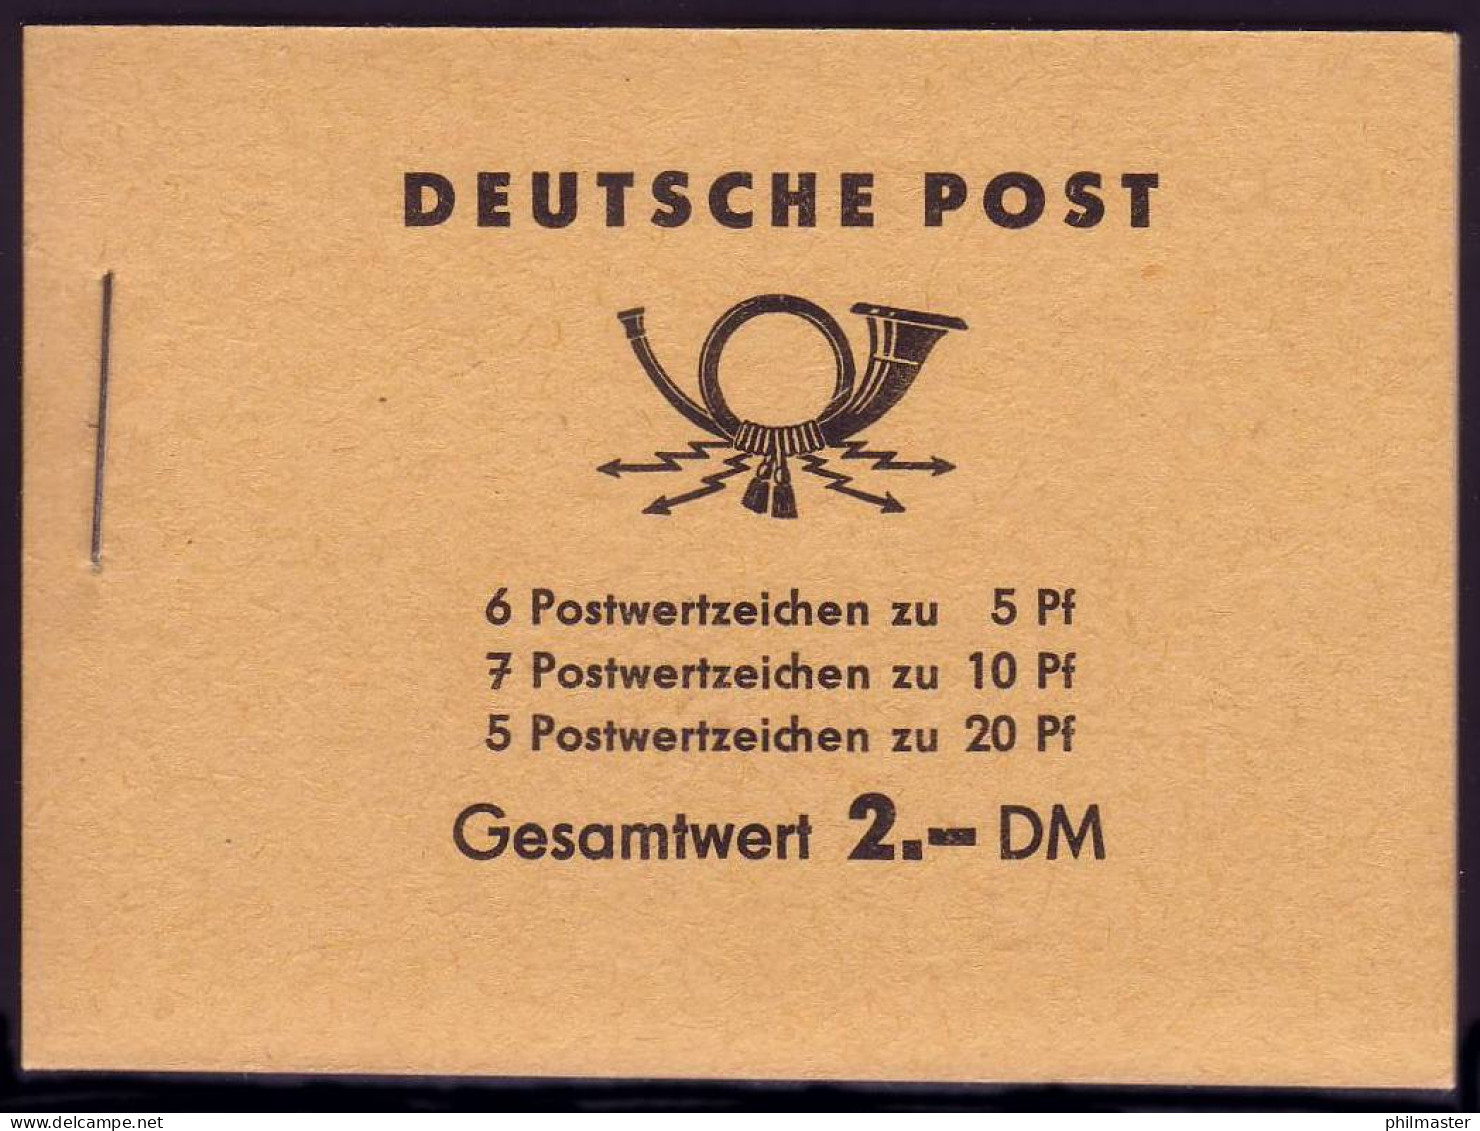 MH 3b1.70 Fünfjahrplan 1961, 2 PLF Farbpunkt Unter Strebe Und Verbundene 2,** - Booklets